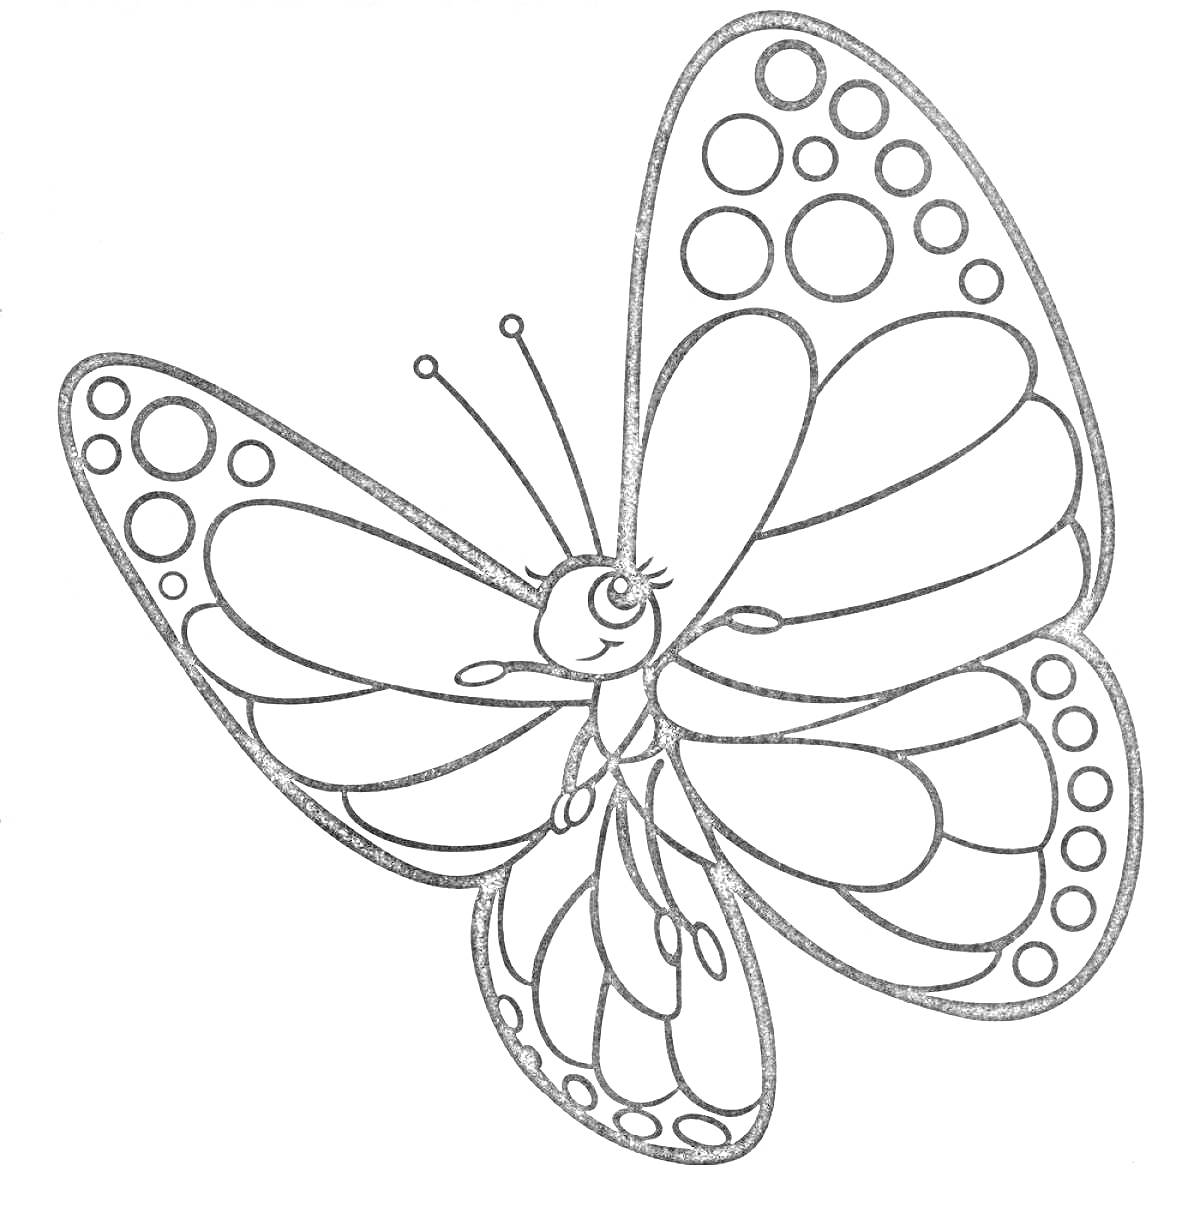 Бабочка с узорами и точками на крыльях